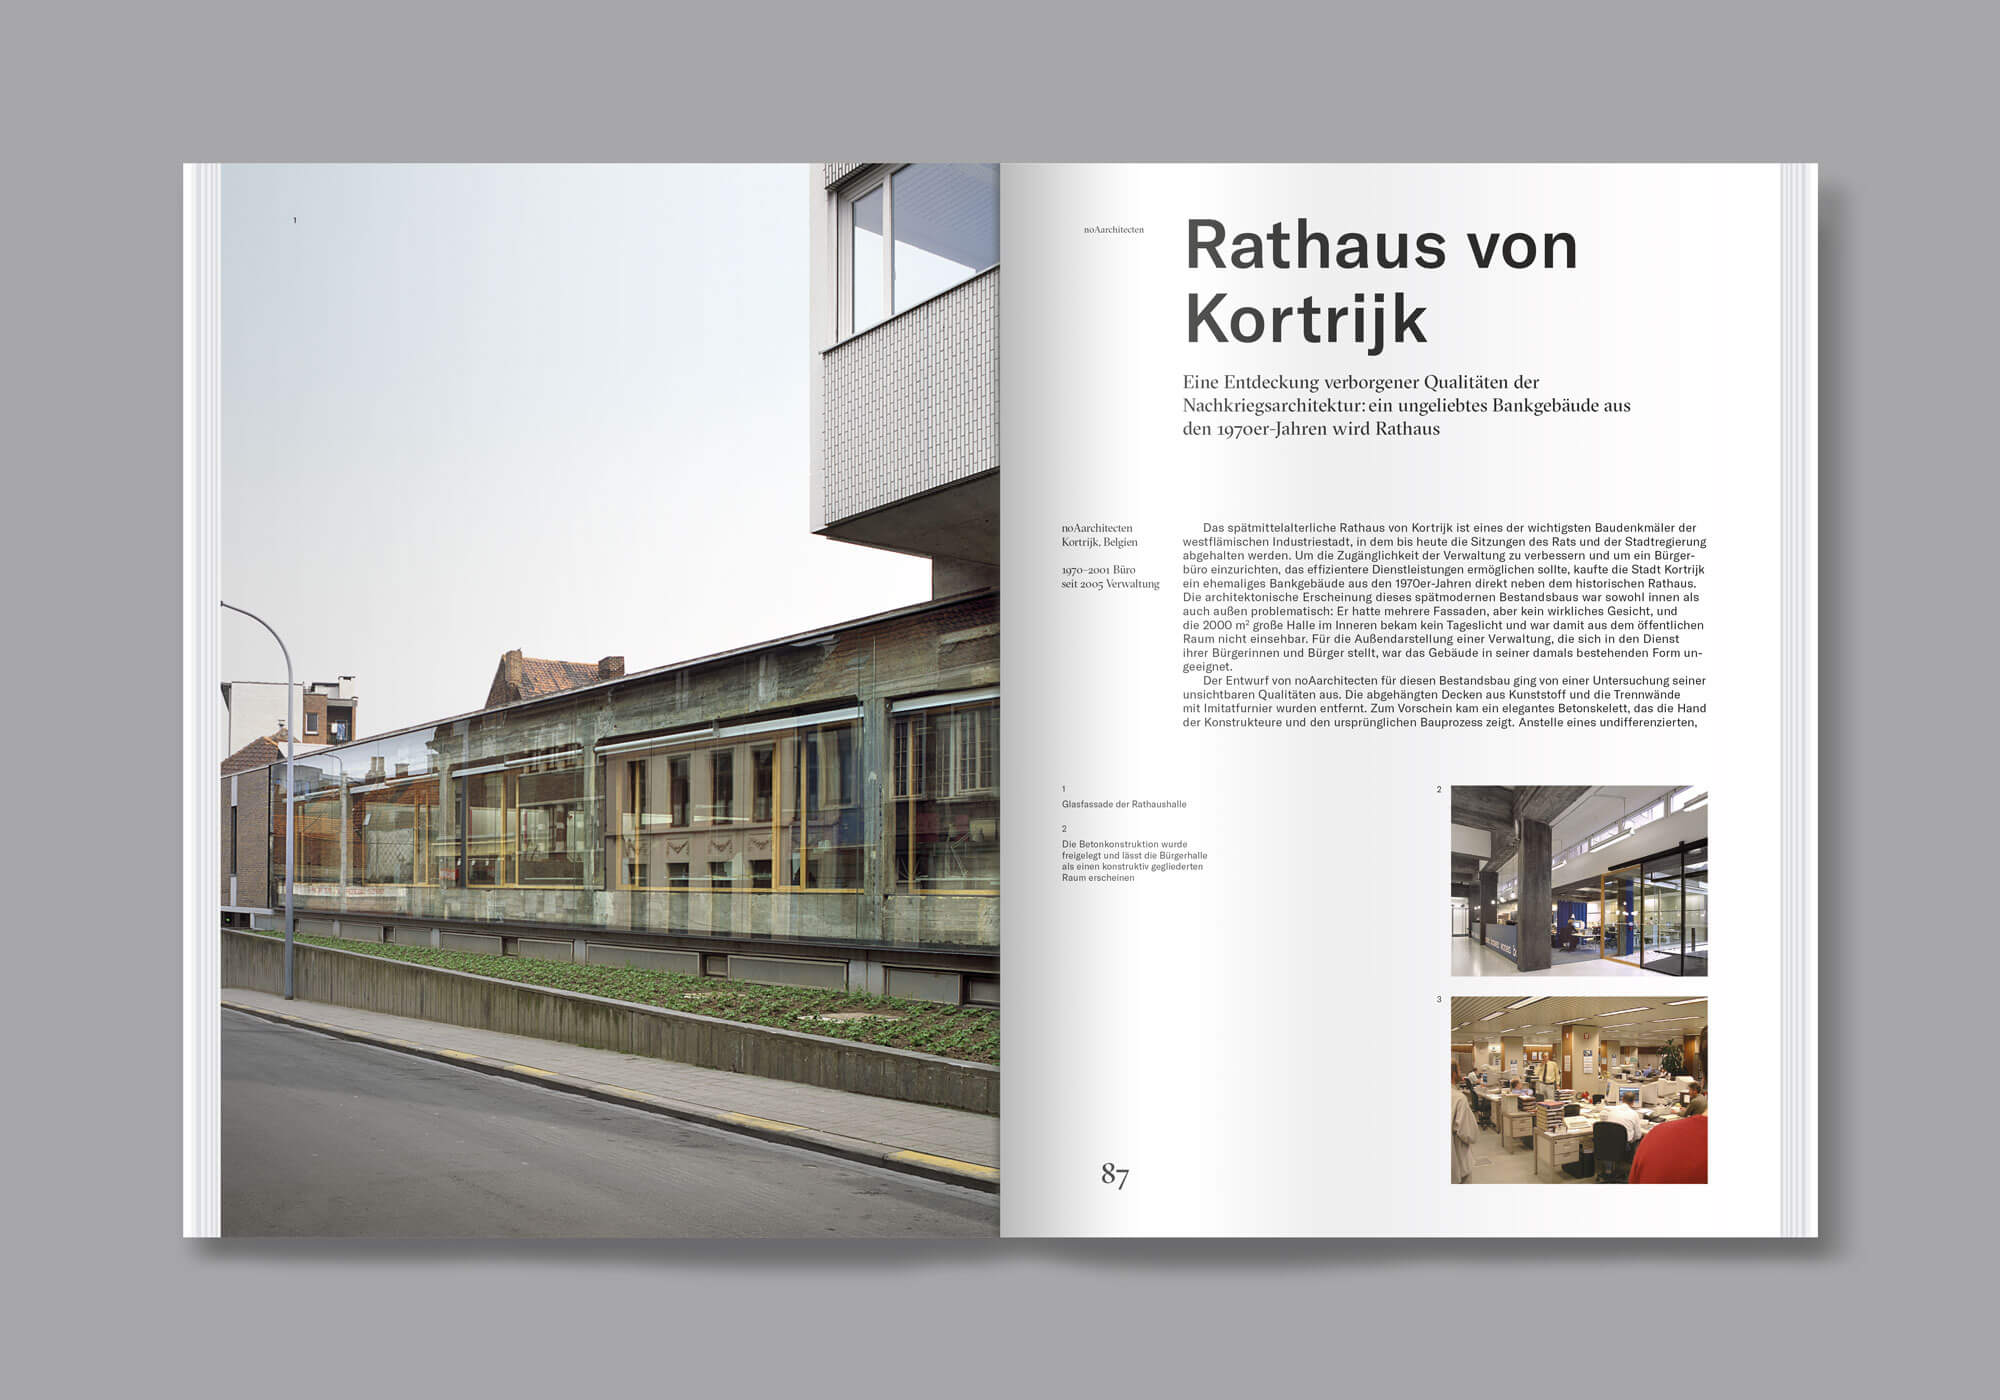 Blick ins Buch Umbaukultur von Christoph Grafe und Tim Rieniets